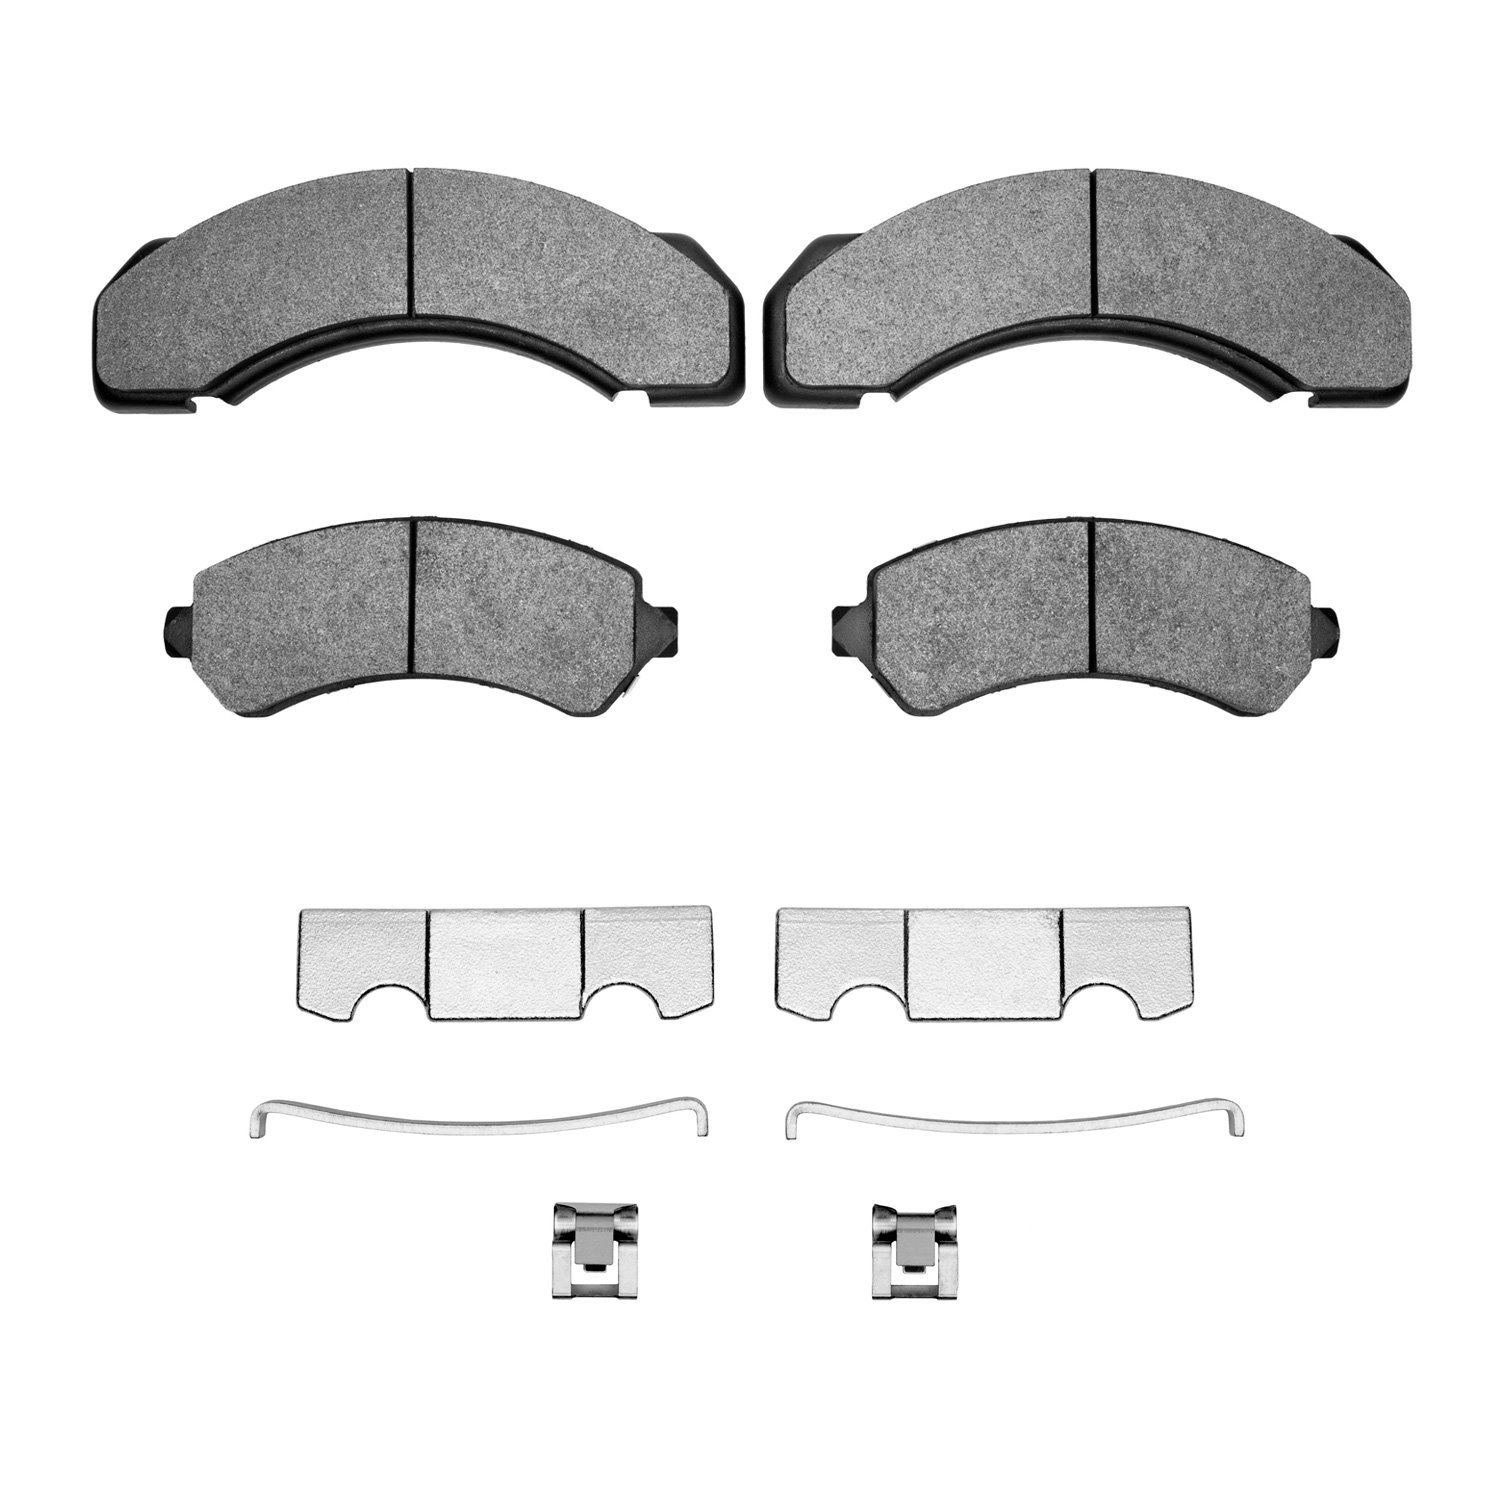 Super-Duty Brake Pads & Hardware Kit, 1973-2012 Fits Multiple Makes/Models, Position: Front & Rear